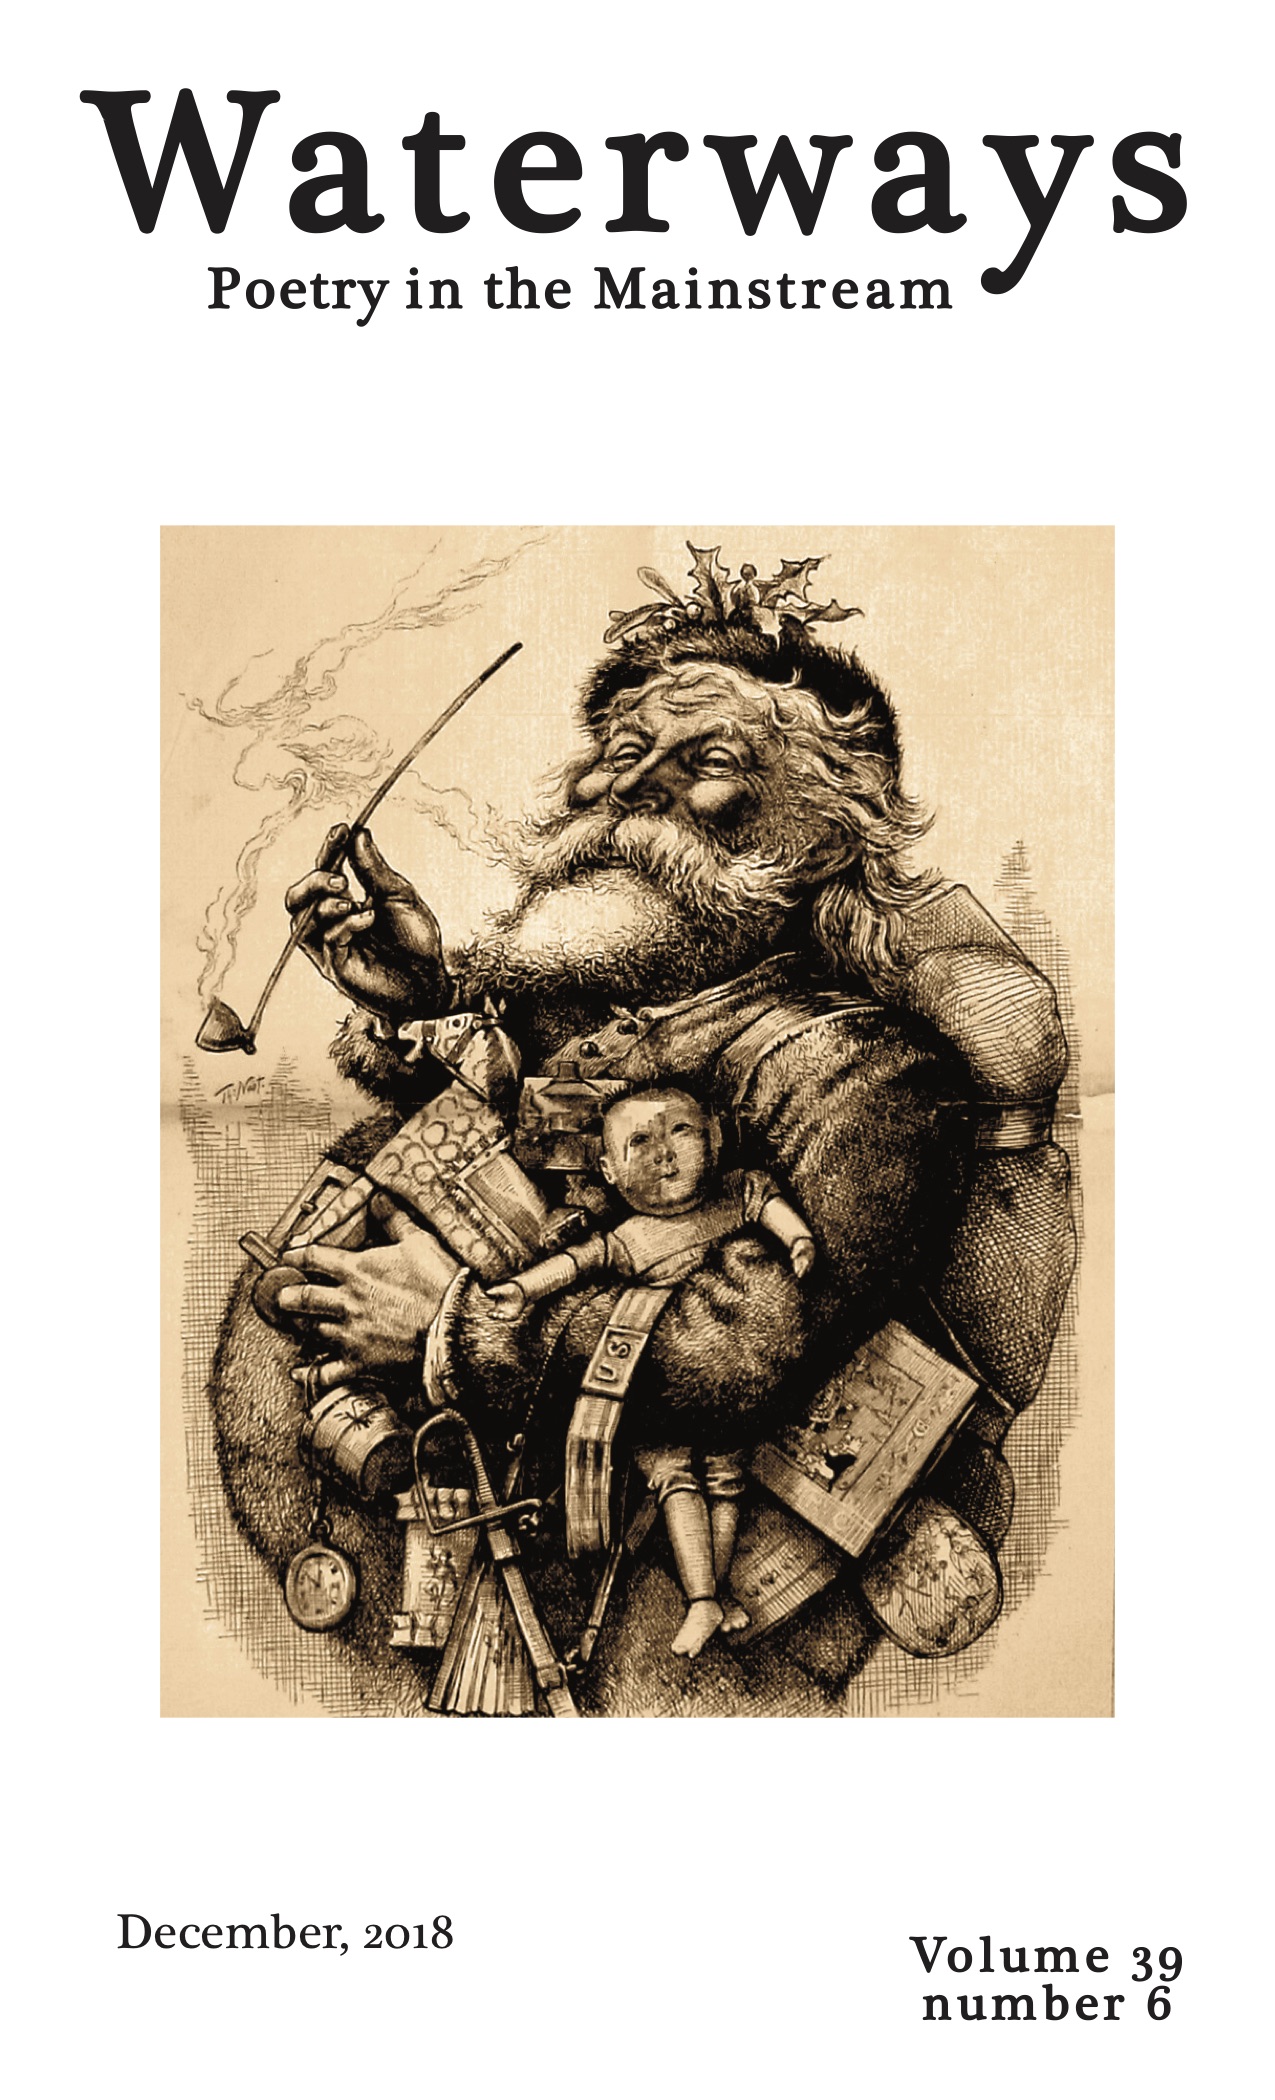 Thomas Nast's caricature of Santa Claus